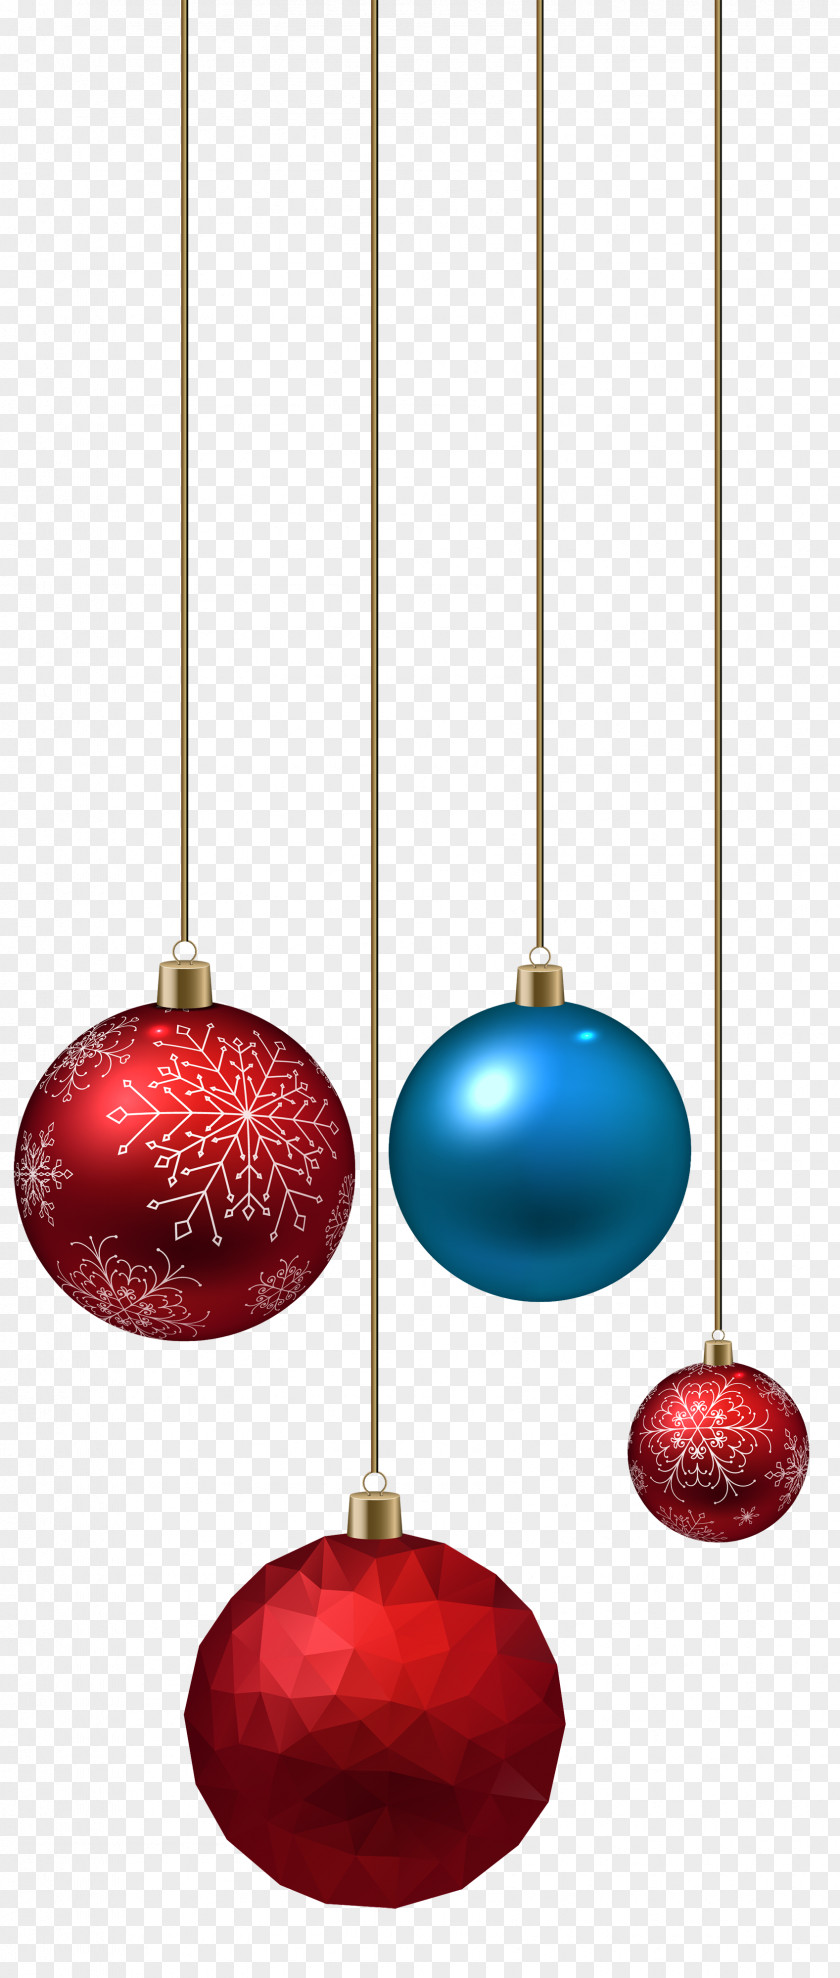 Christmas Balls Transparent Santa Claus Ornament Clip Art PNG